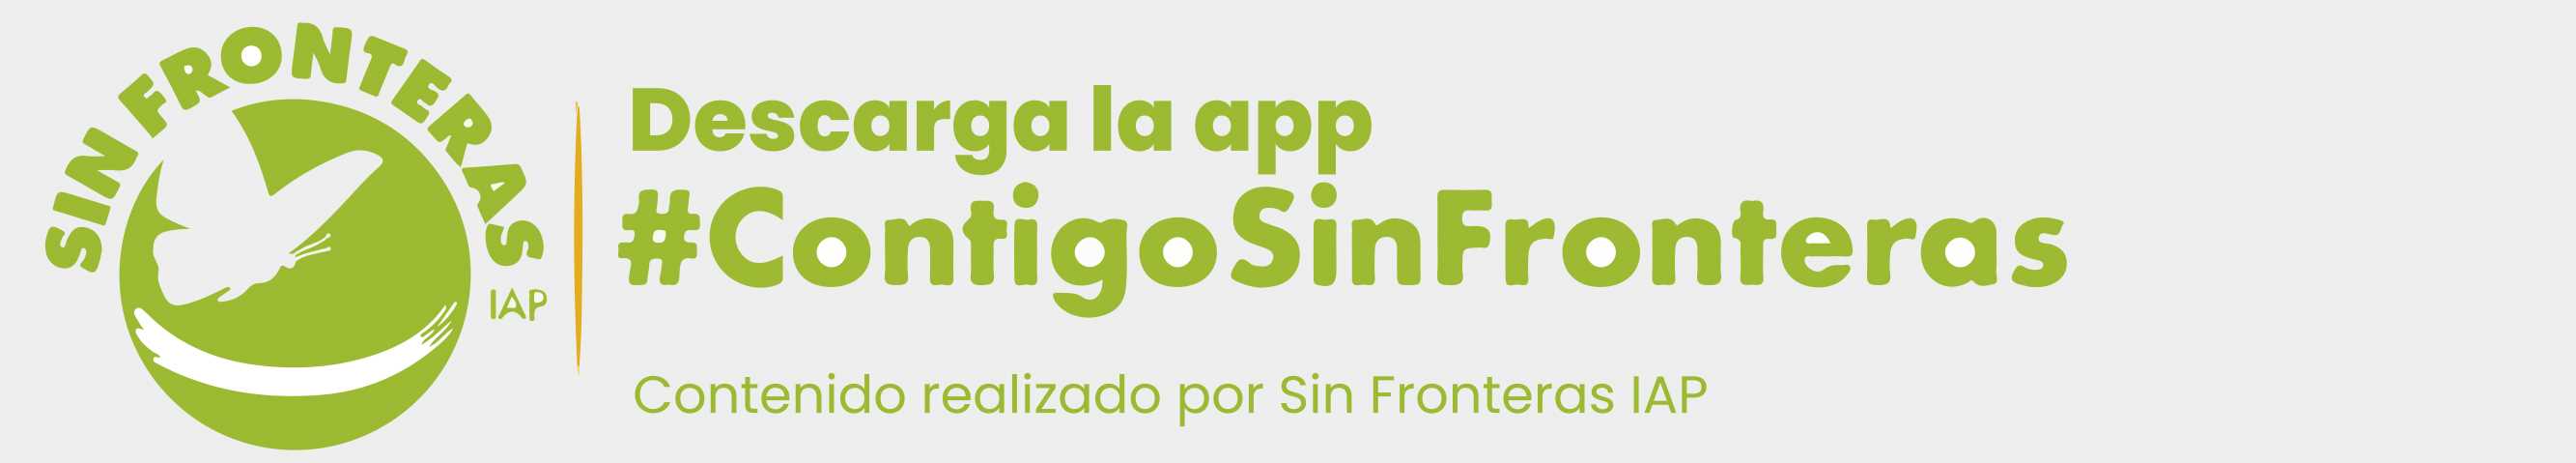 out-App Contigo Sin Fronteras IAP.jpg